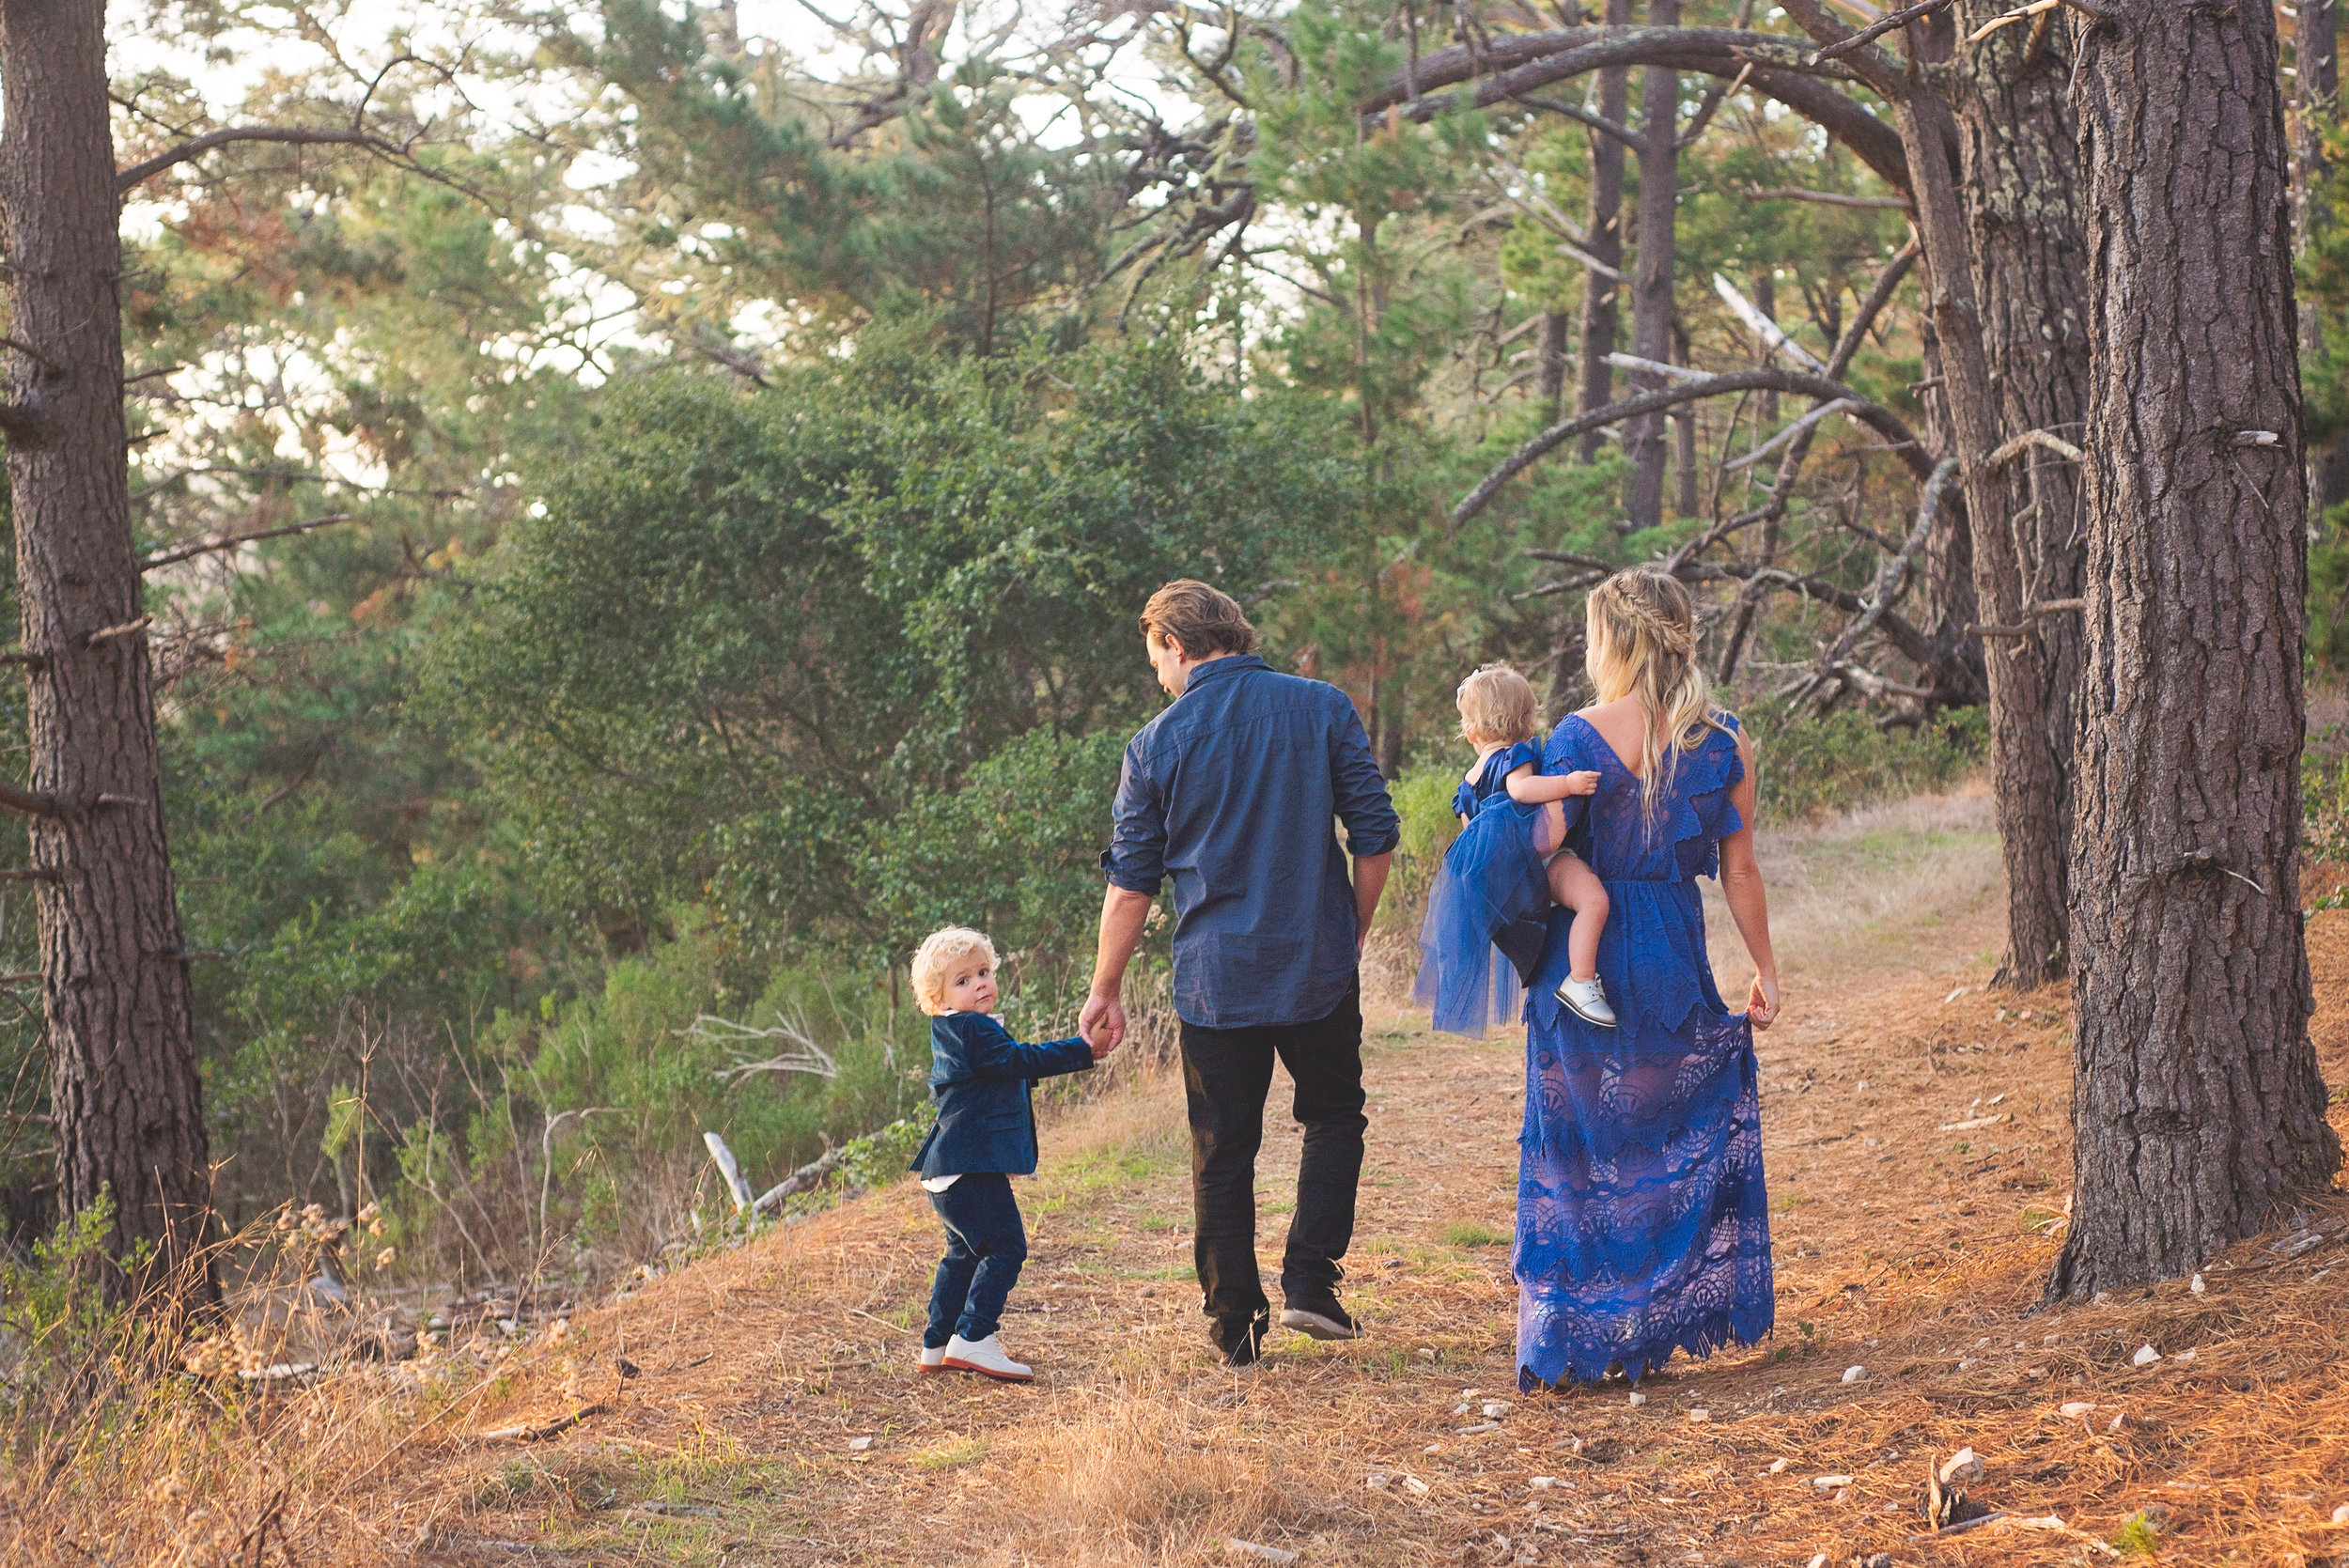 Monterey Family Photographer | The Talbott Family, Jack's Peak Park ...